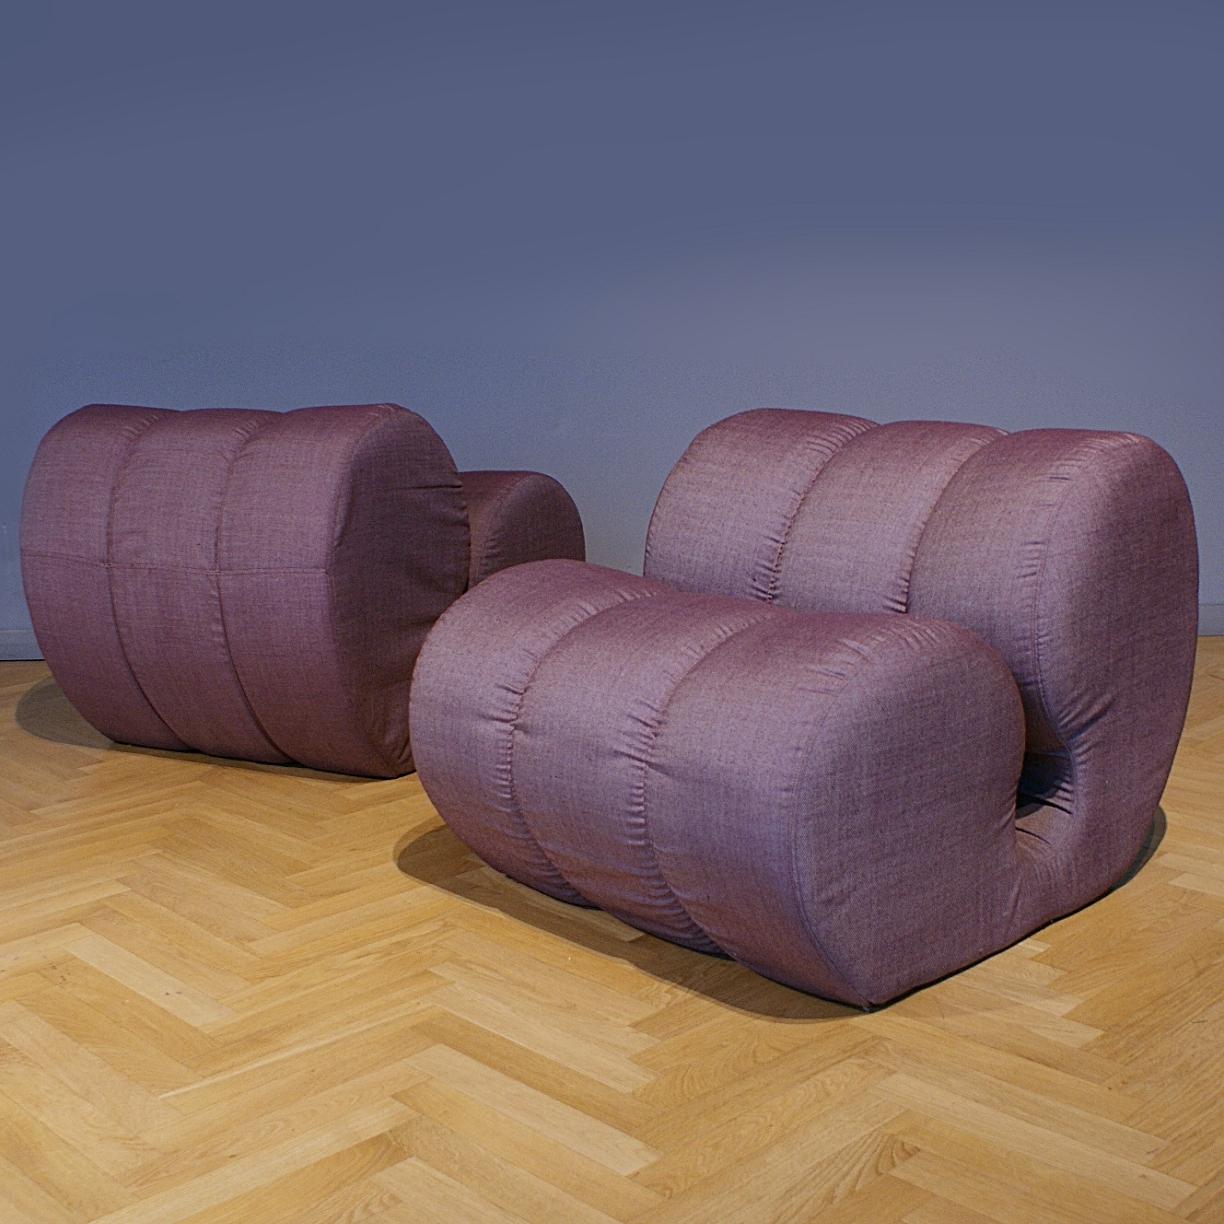 Extraordinaires chaises longues italiennes de la NO AGE dans le style de Mario Bellini. Le cadre des chaises est recouvert d'une mousse souple arrondie et tapissé d'un tissu italien très fin. Nous adorons la polyvalence et les possibilités de